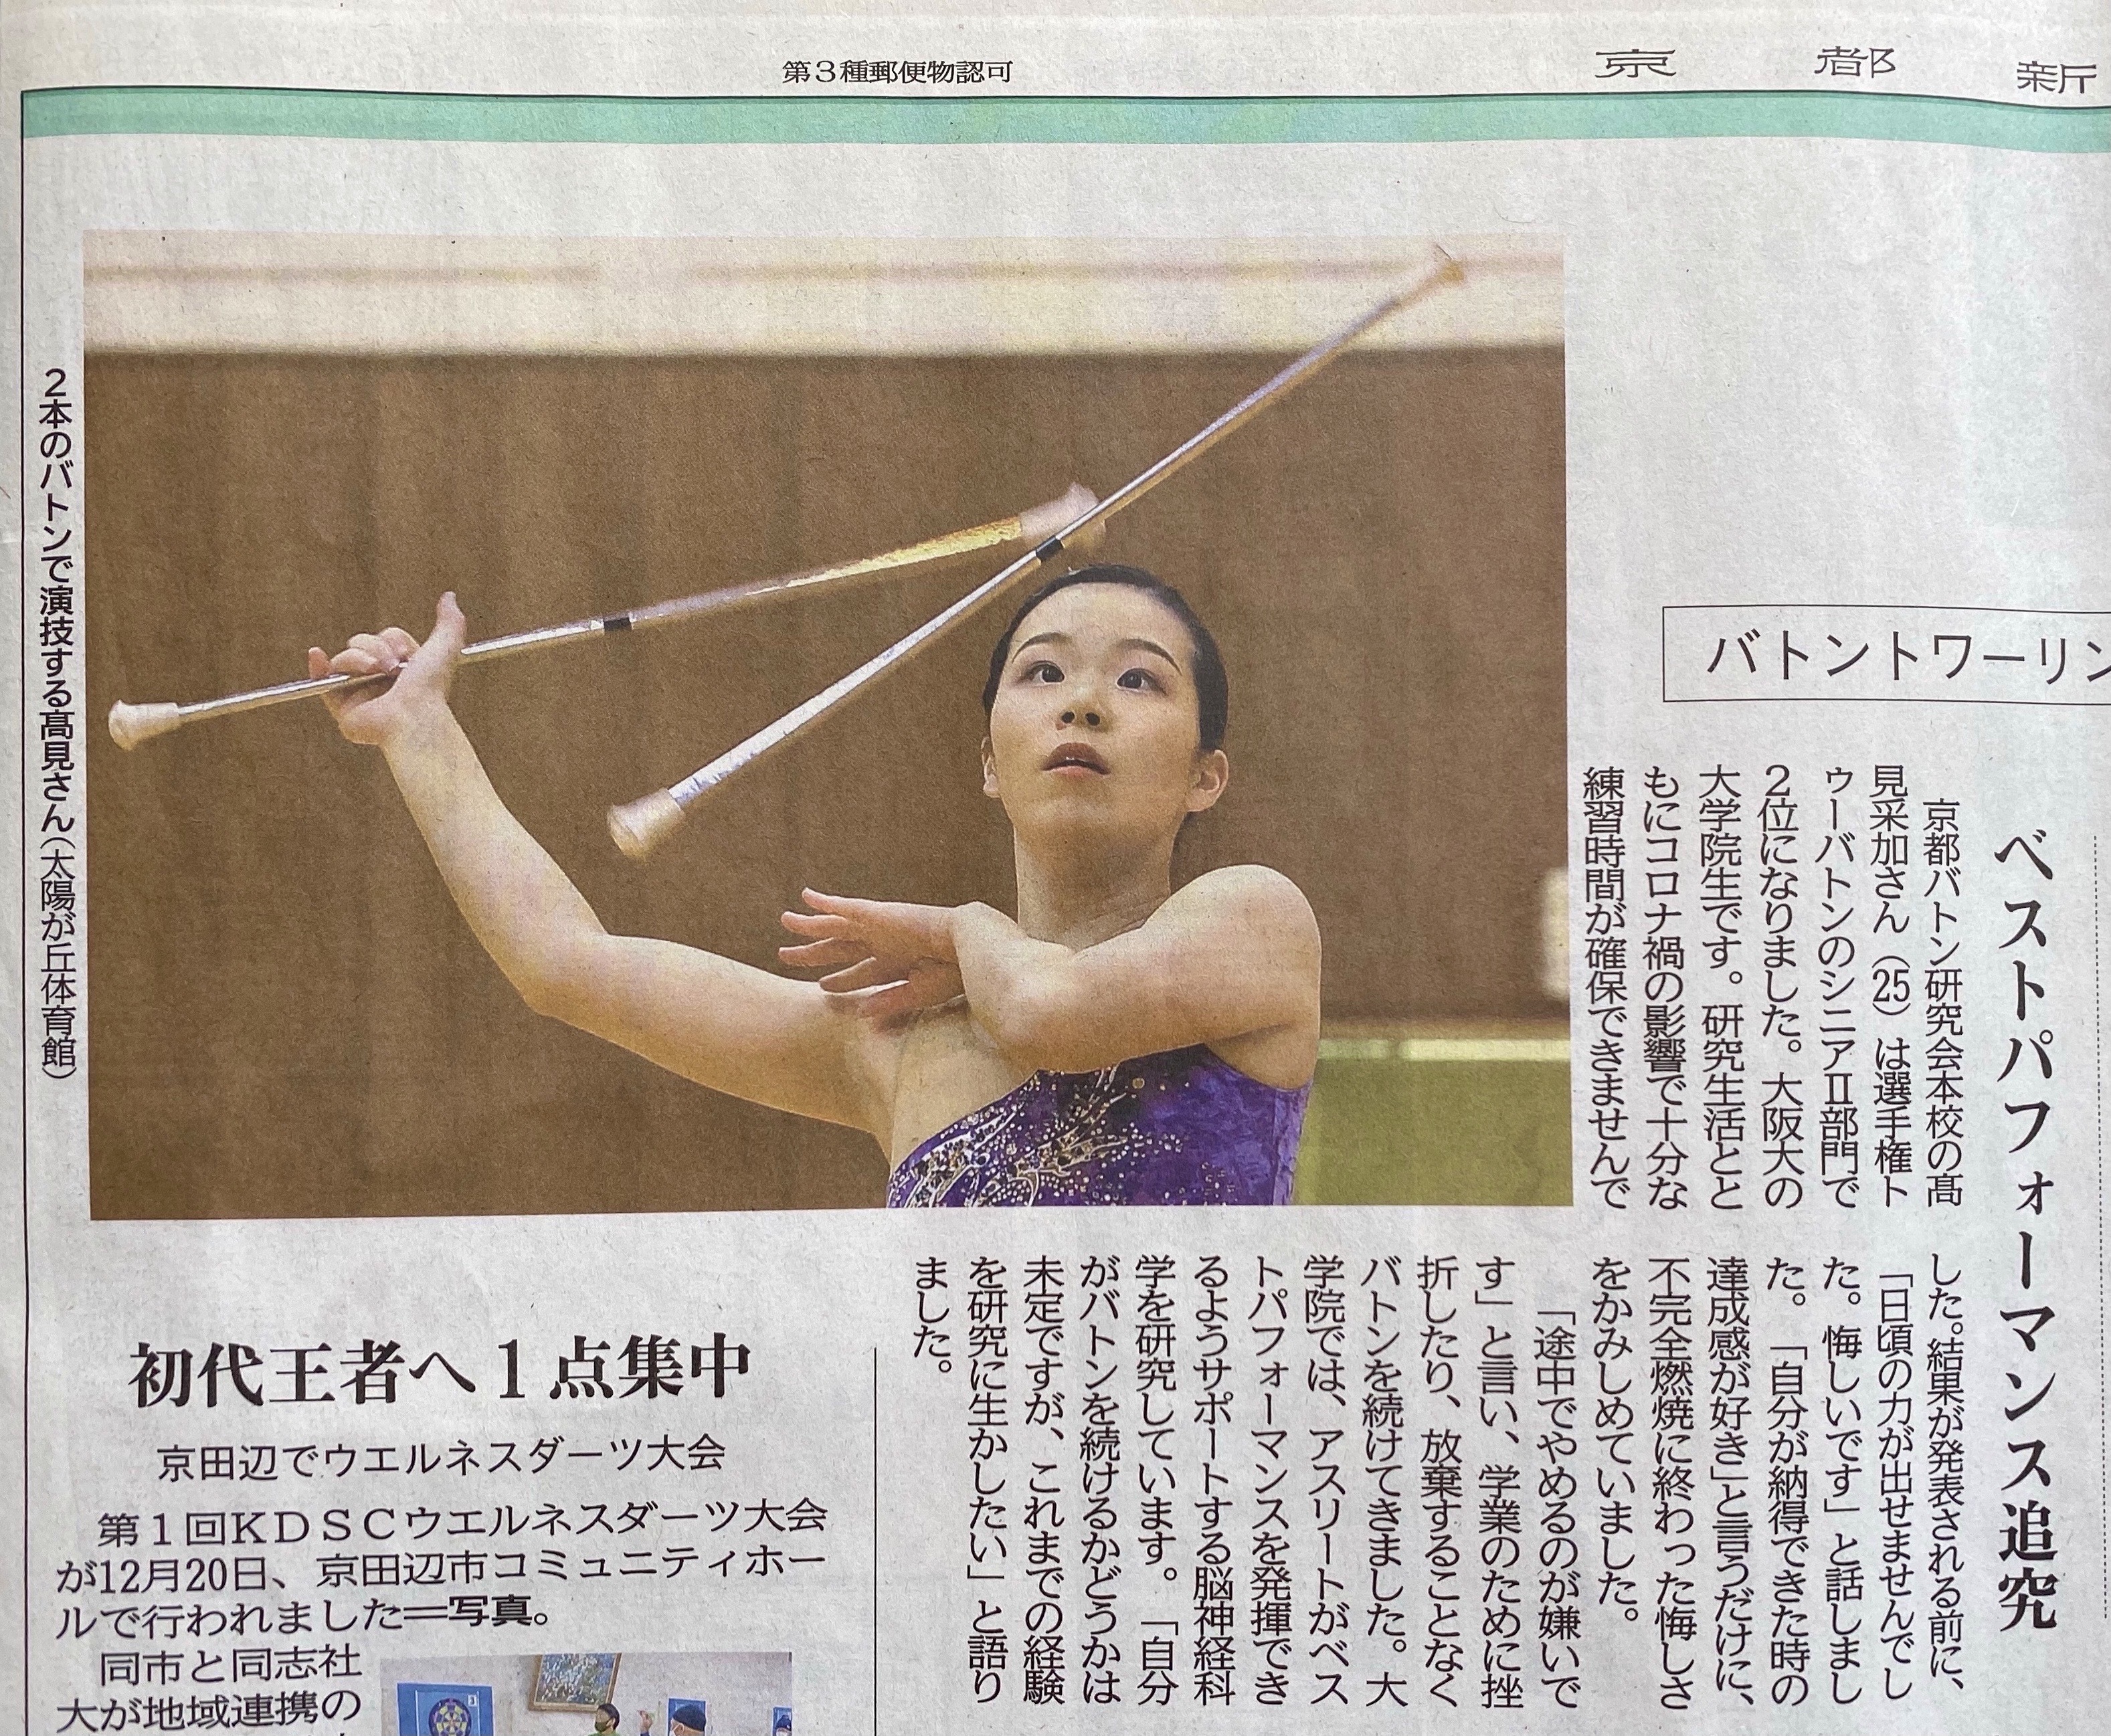 高見采加さんが昨年末にバトントワリングの選手権大会に出場し、京都新聞(2021/01/09)に取り上げられました。